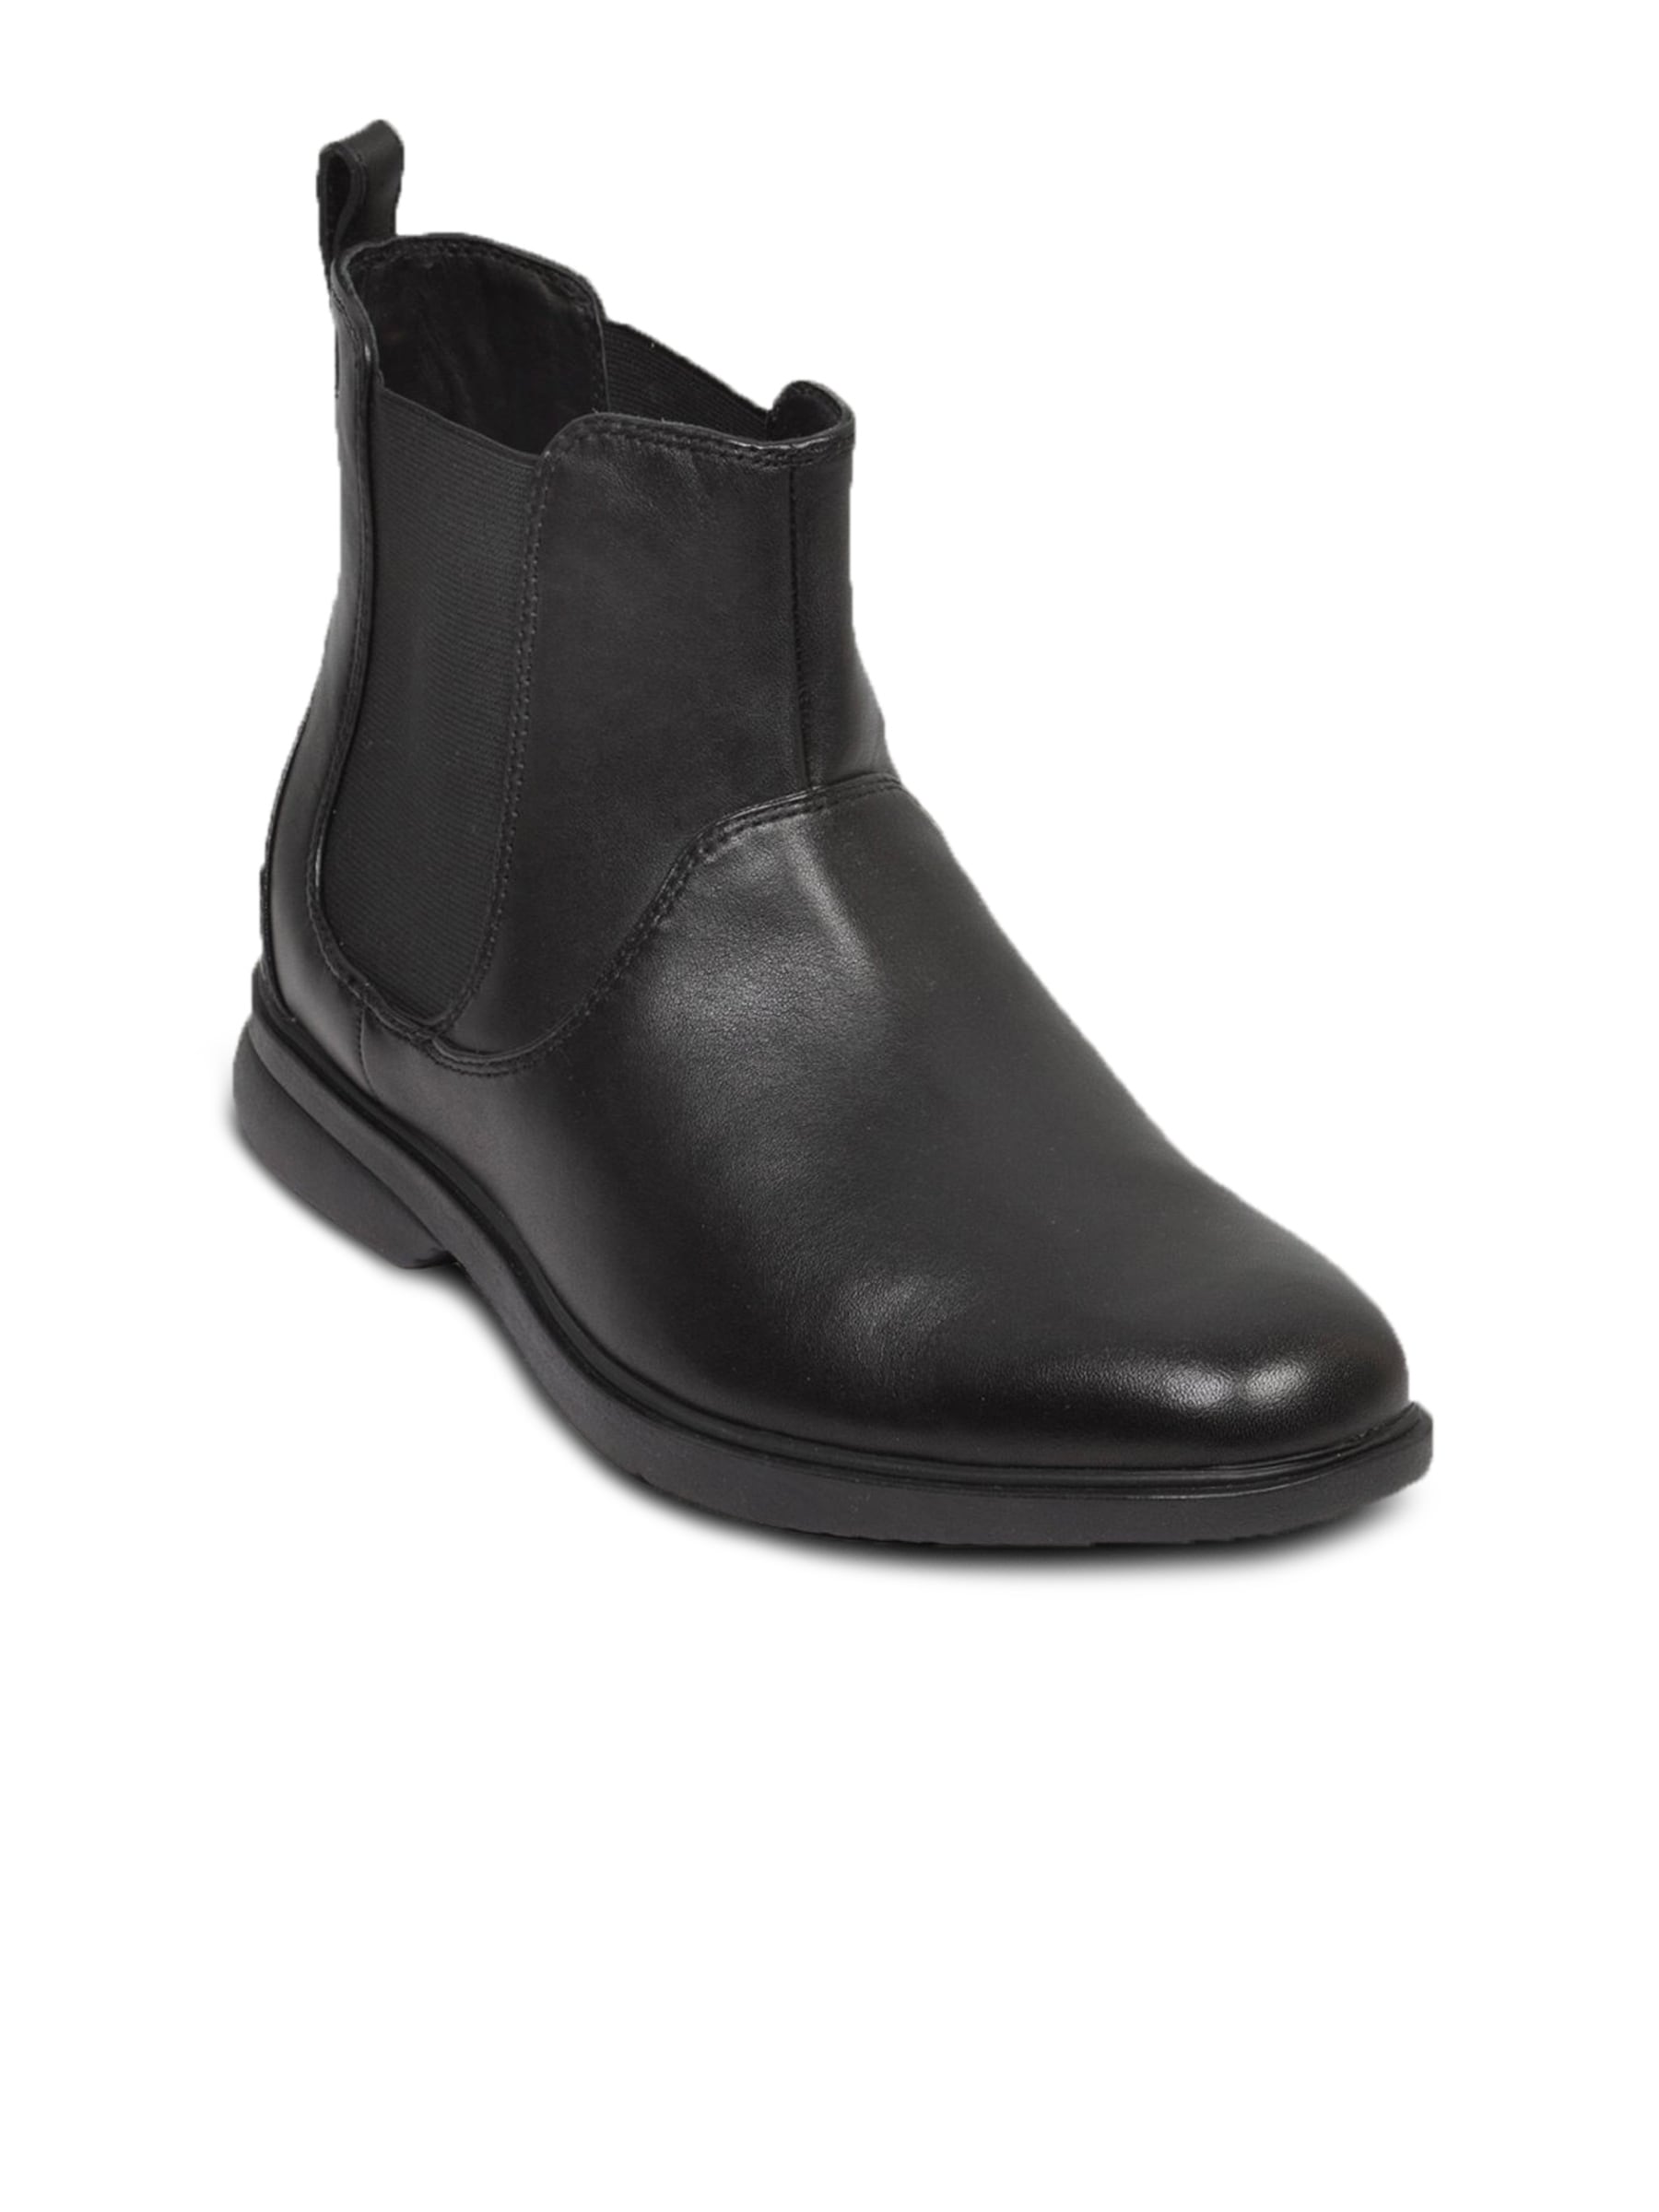 Rockport Men's Aphrael Black Shoe